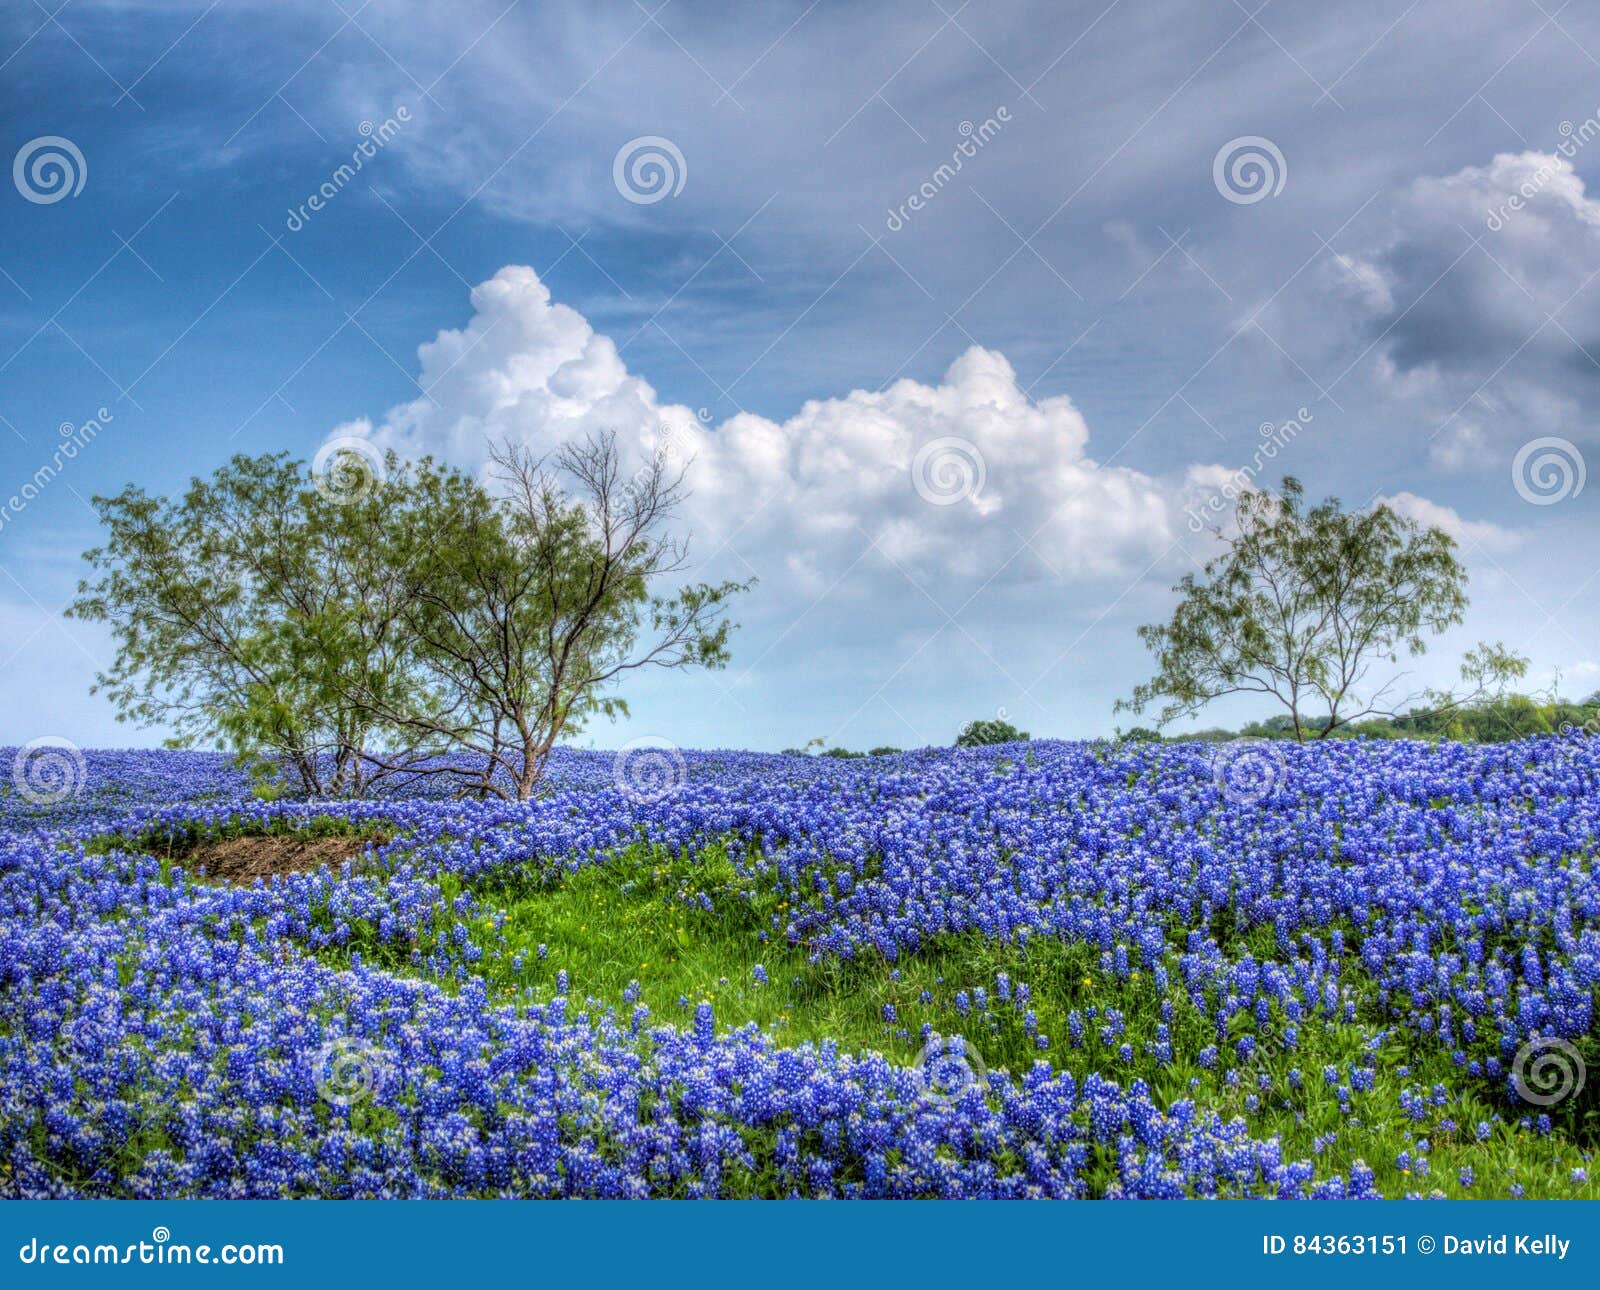 field of texas bluebonnets